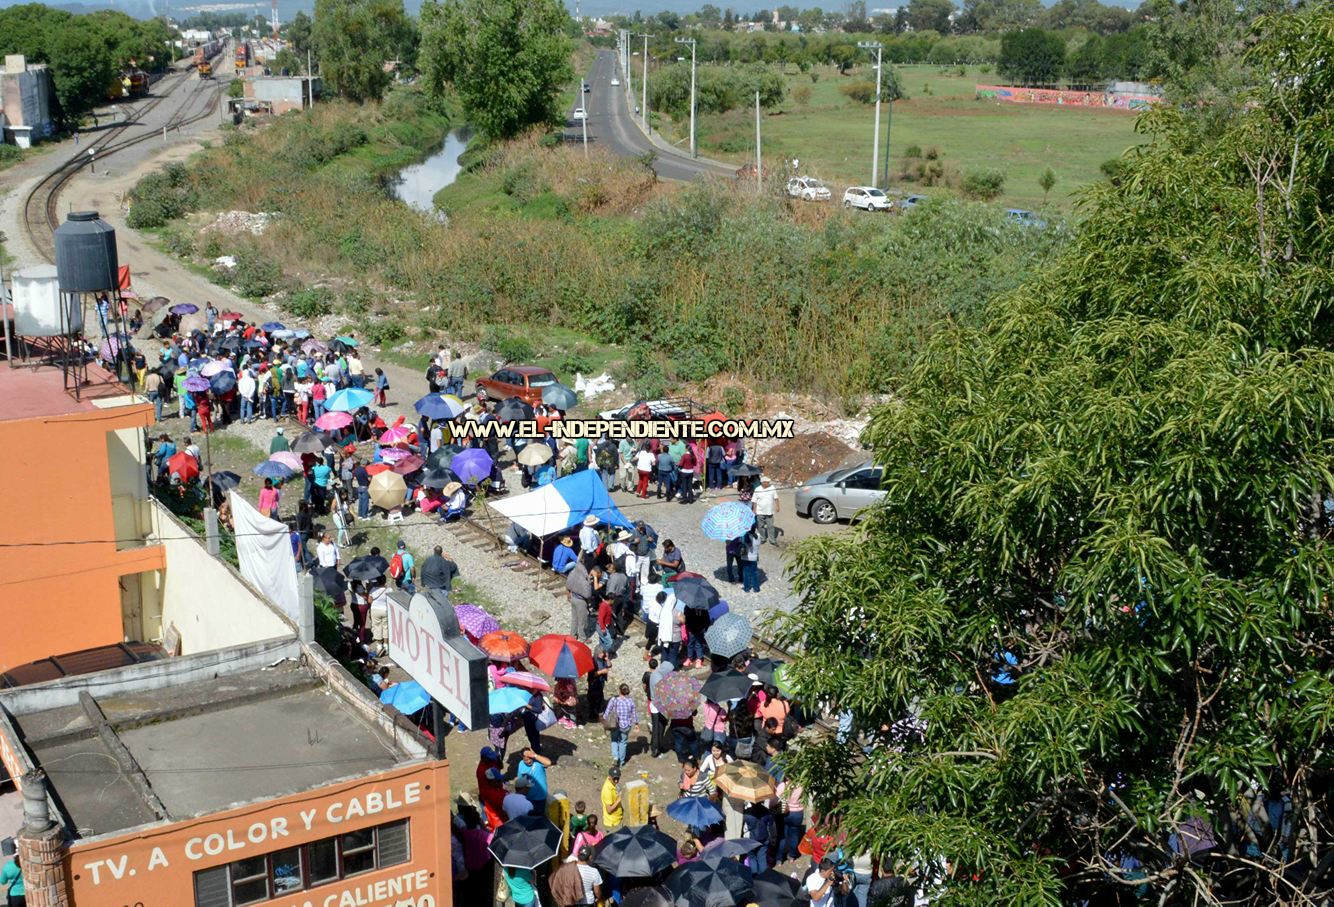 Centistas toman las vías del ferrocarril en Morelia y en LC; en la capital los desalojan